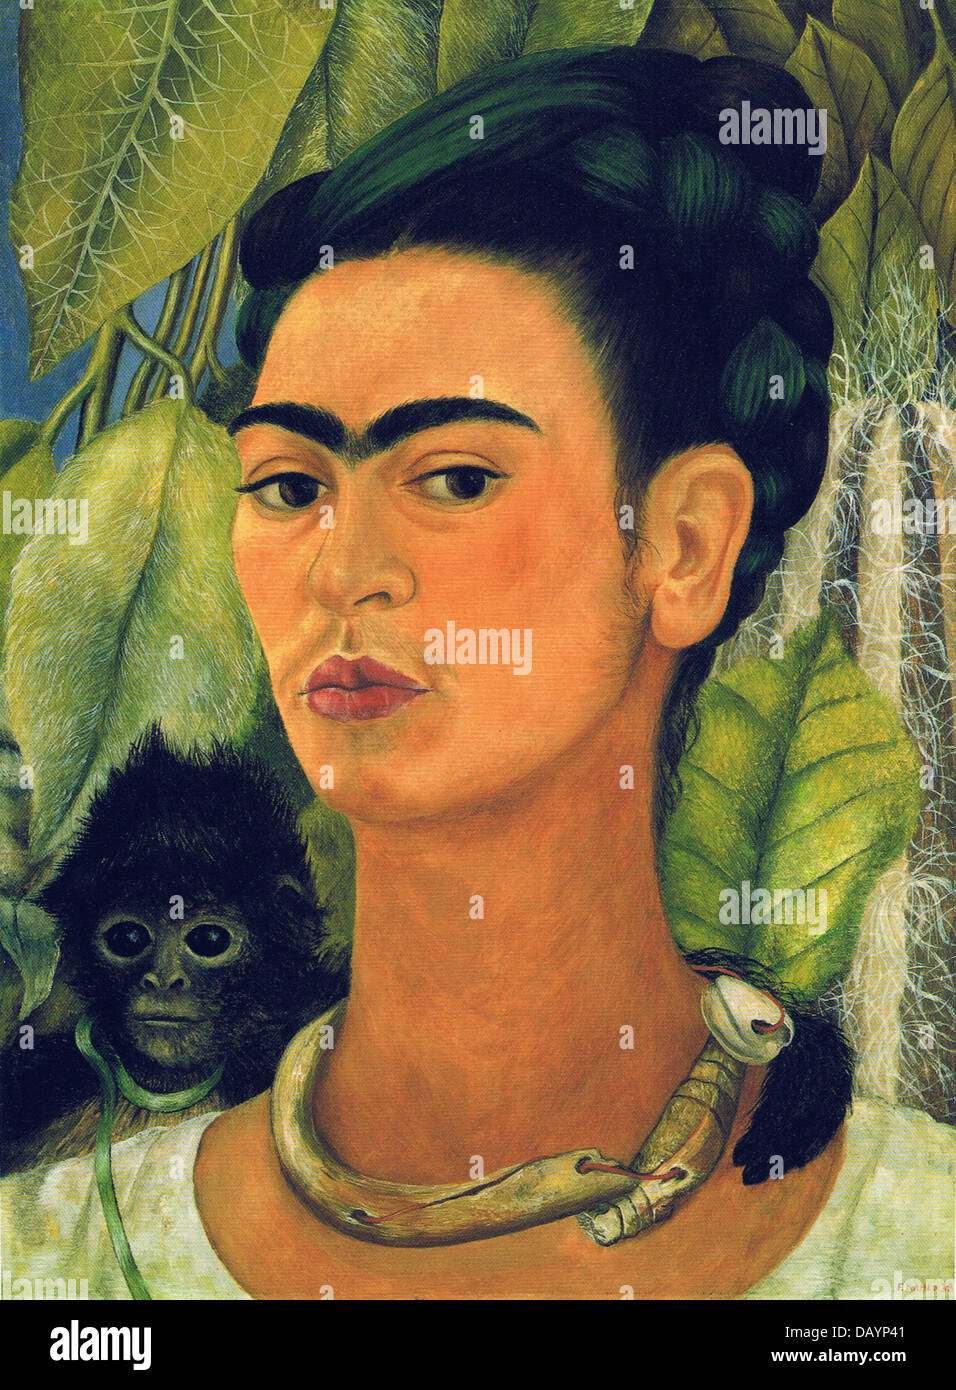 Frida Kahlo Self-portrait with Monkey 1938 Stock Photo